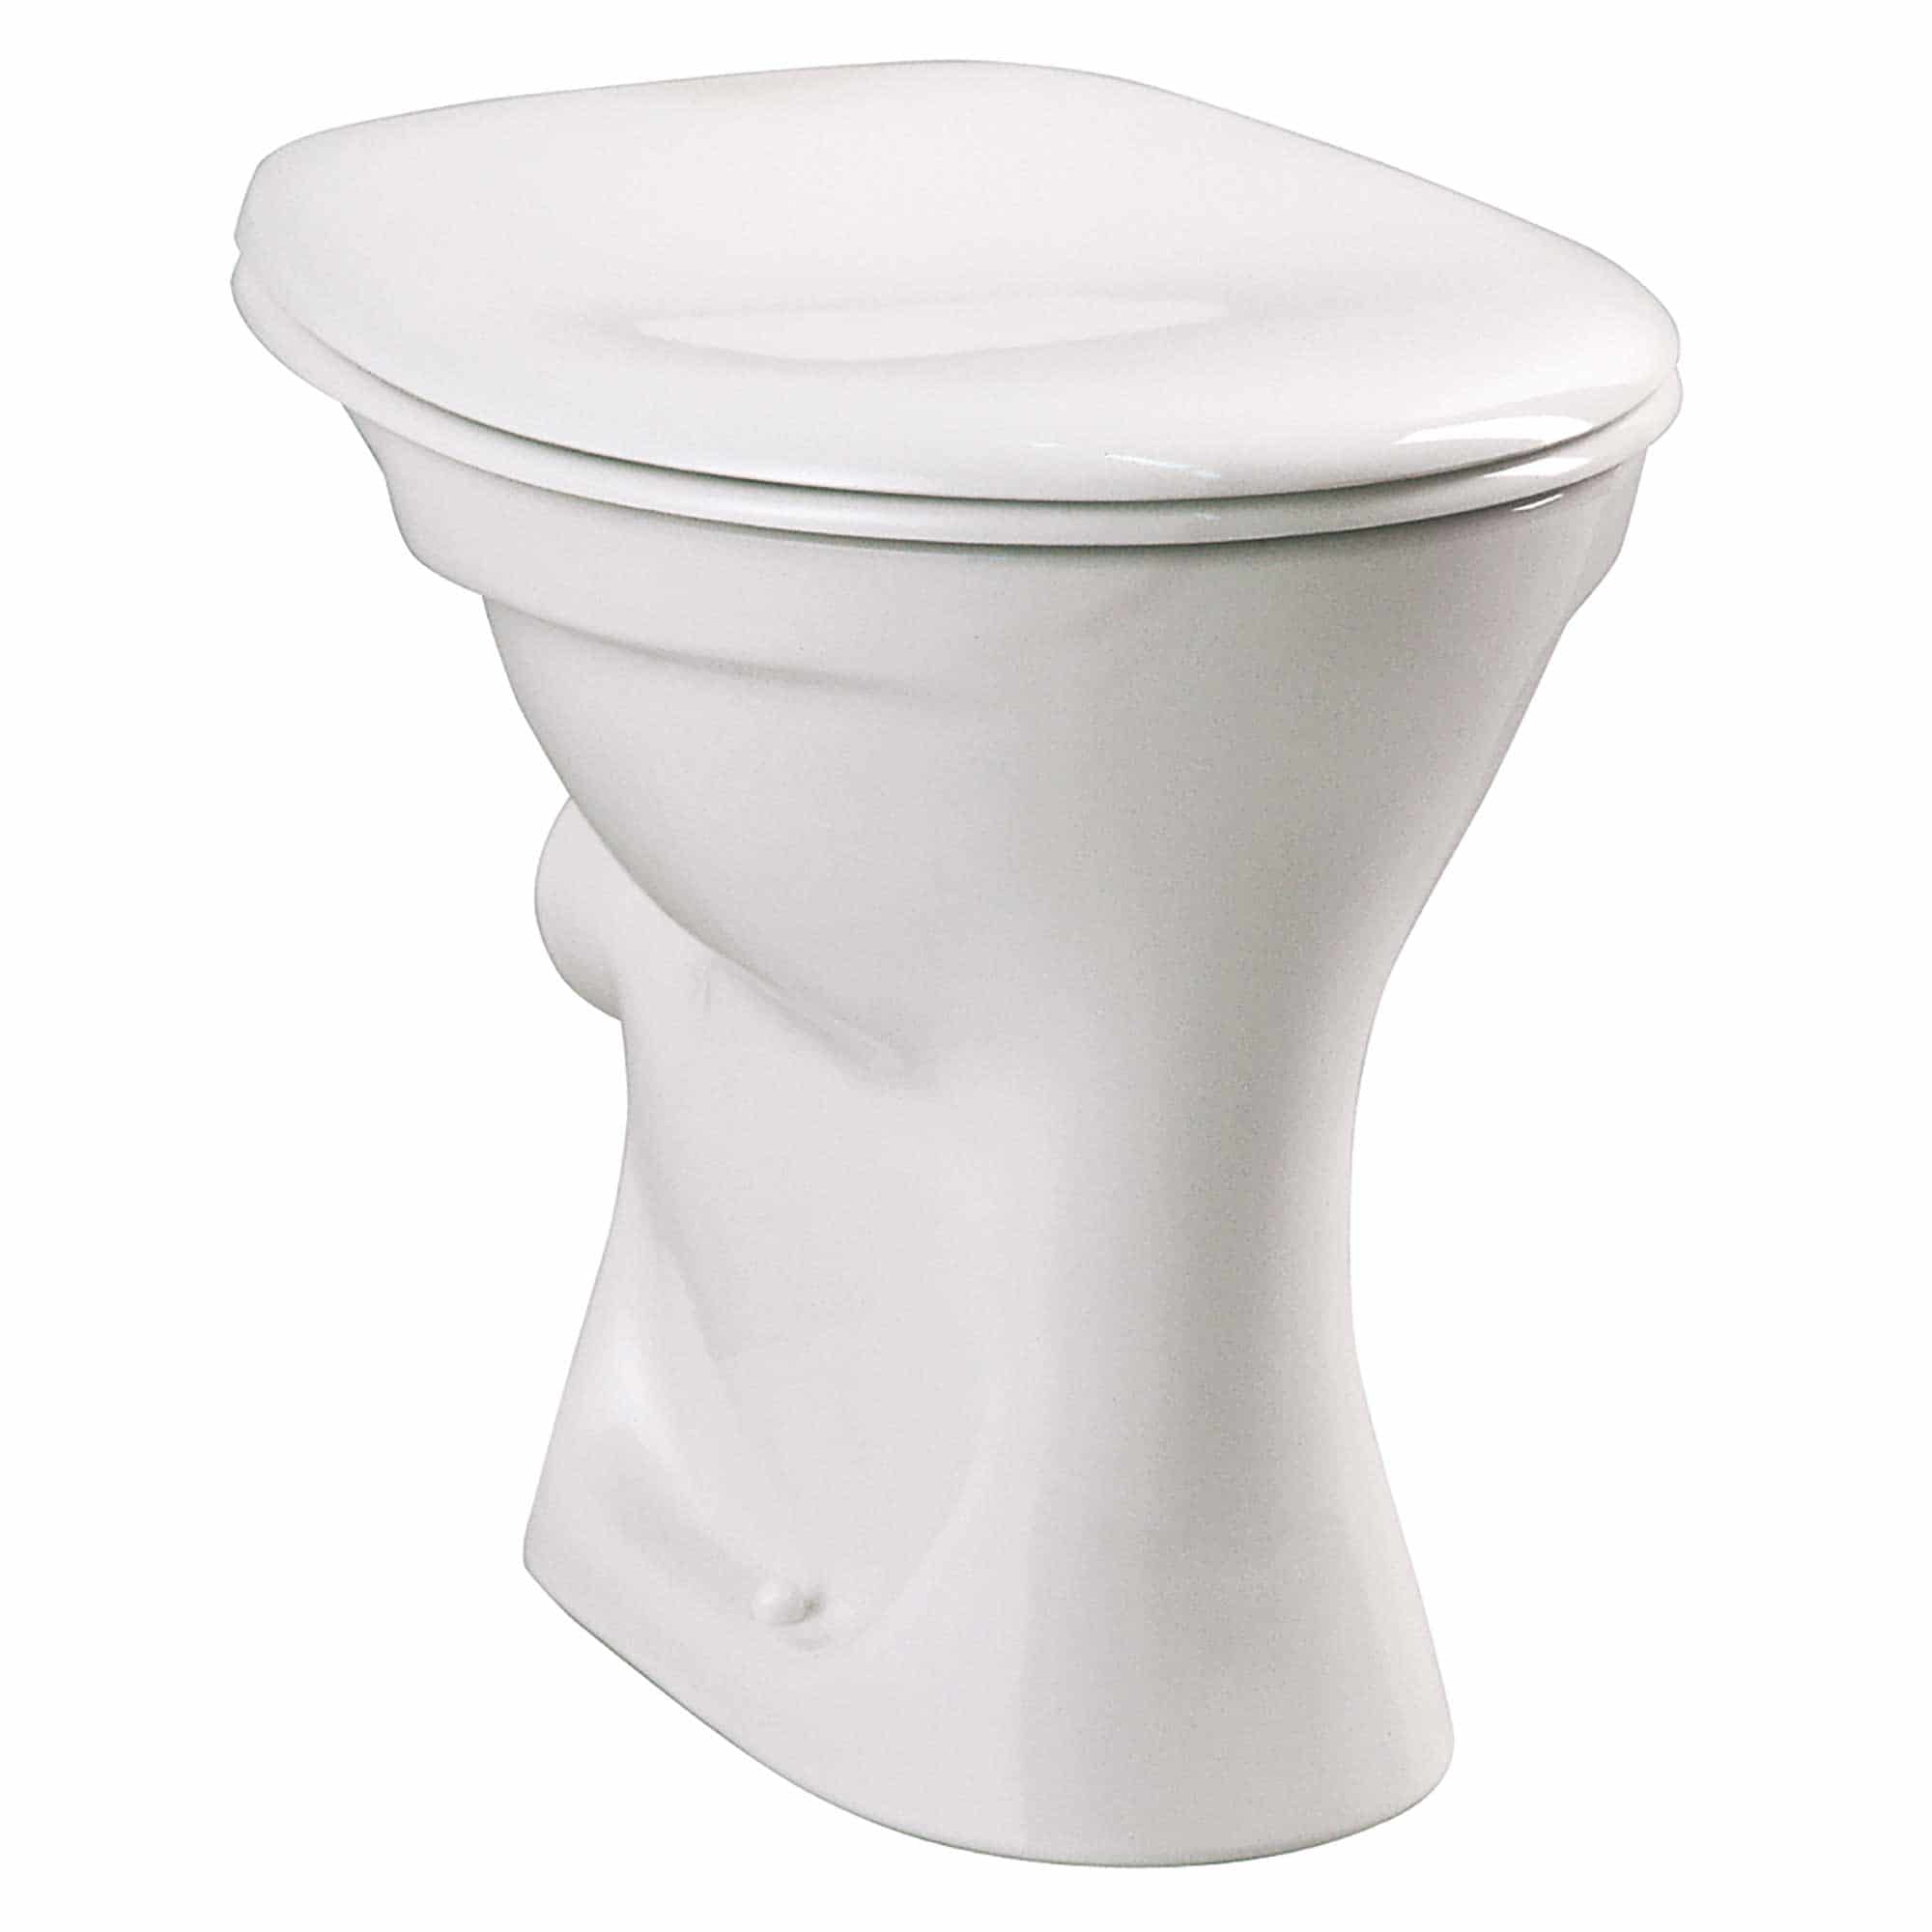 Flachspül-WC Base bodenstehend weiß ohne WC Sitz, Abgang waagerecht